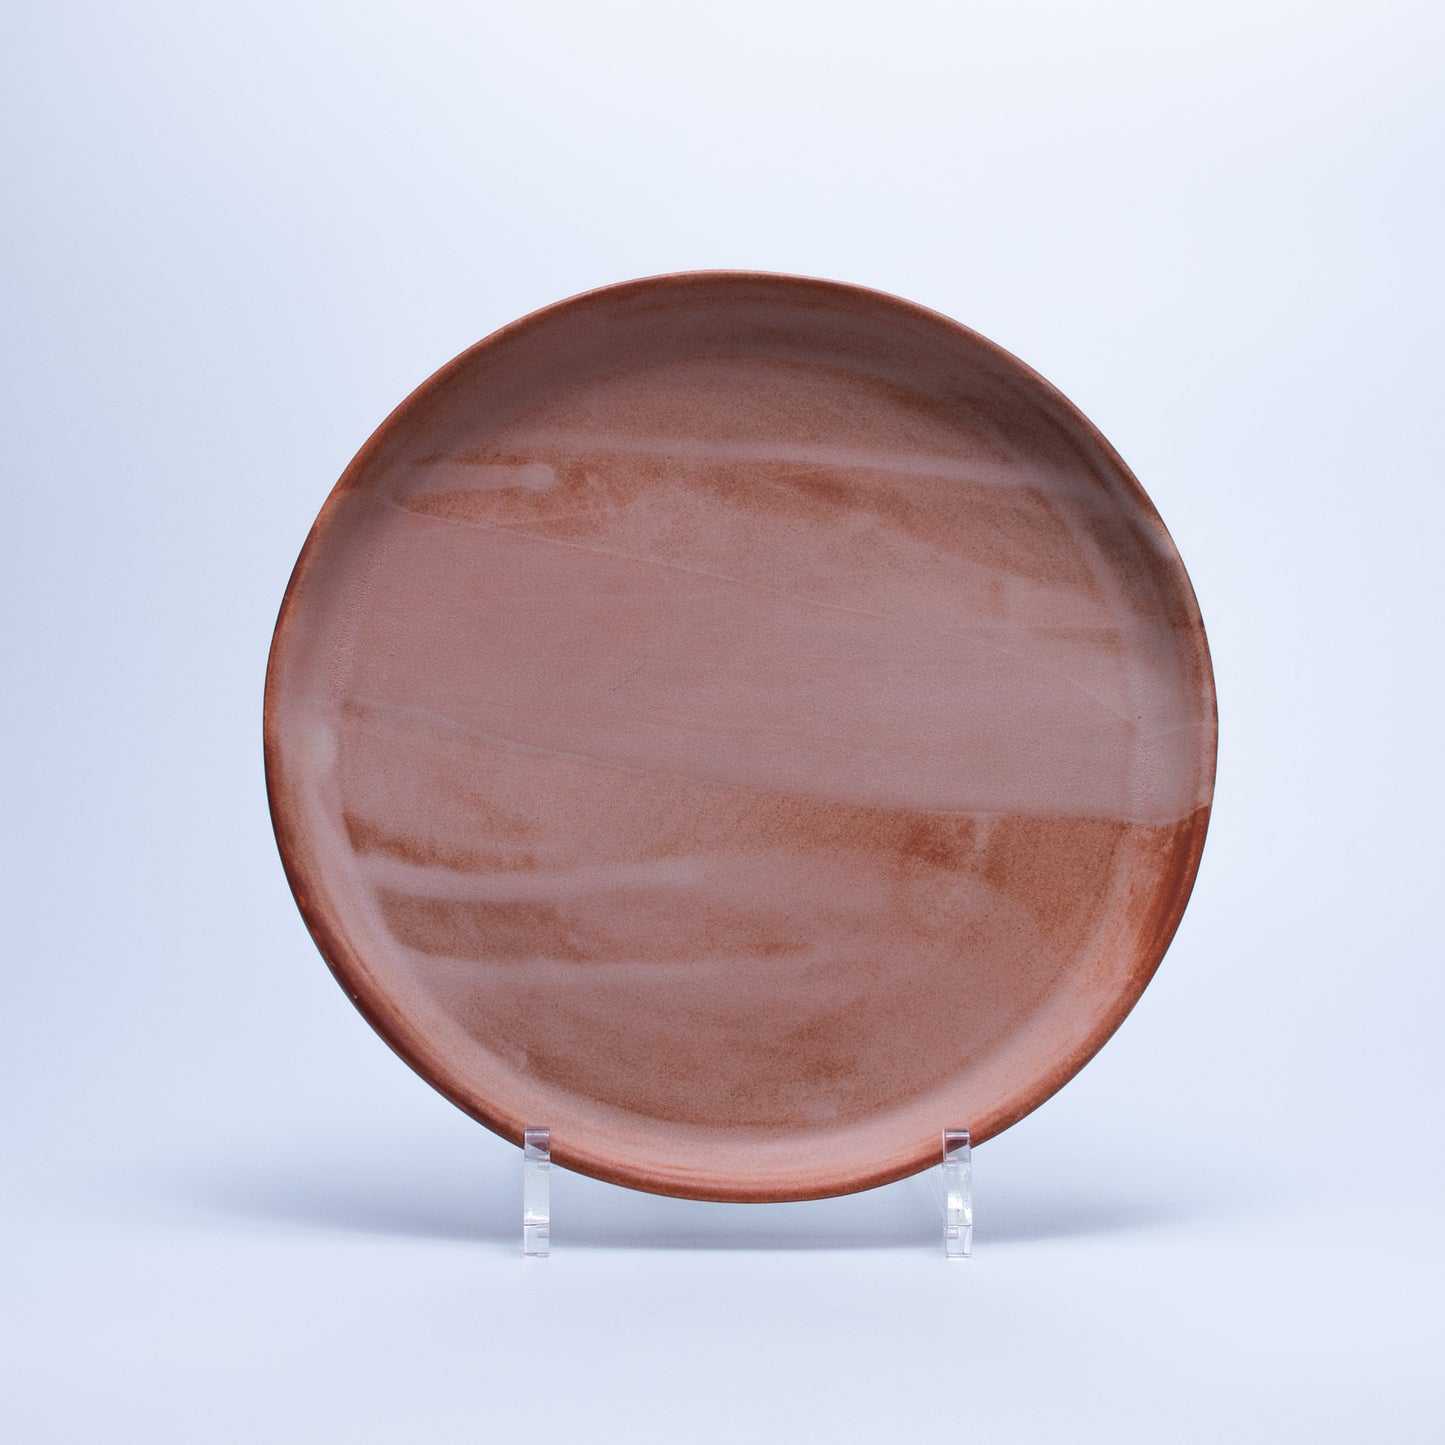 Brown brick plates and bowls